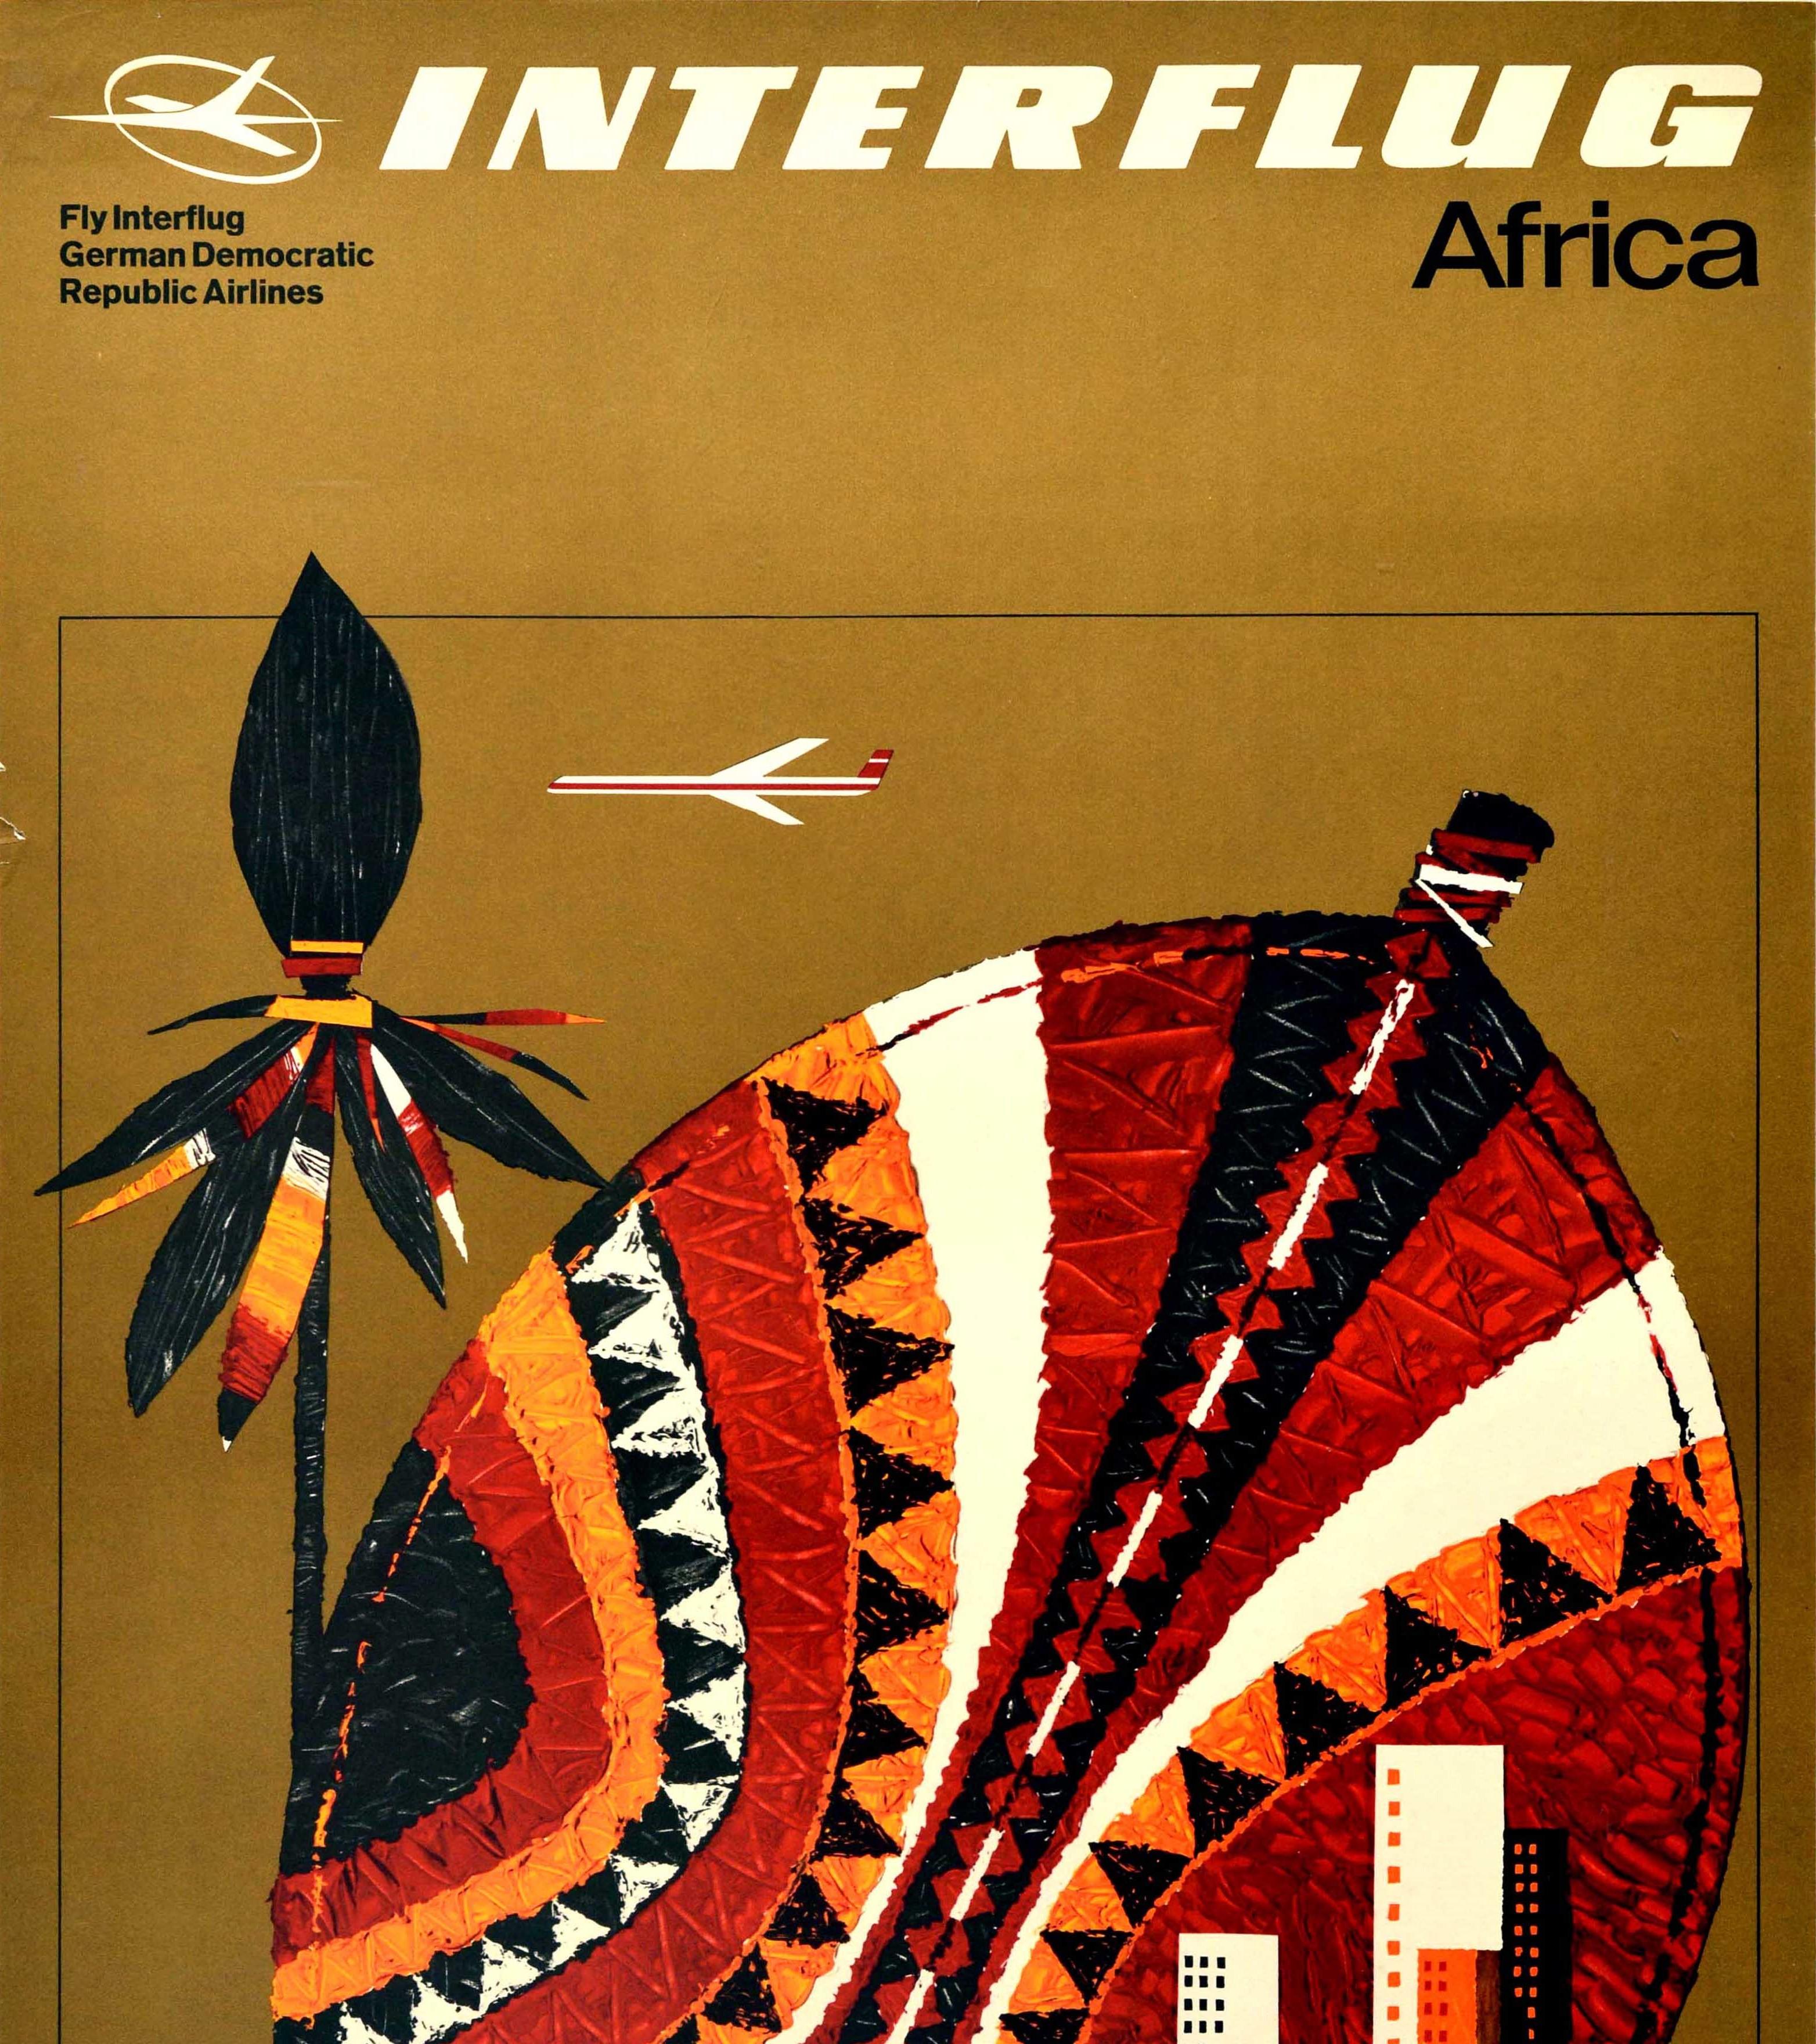 Original Vintage-Werbeplakat für Interflug Africa - Fly Interflug German Democratic Republic Airlines - mit einem stilisierten weiß-roten Flugzeug, das über einen Speer und ein Schild fliegt, das in einem traditionellen farbenfrohen Muster mit einem